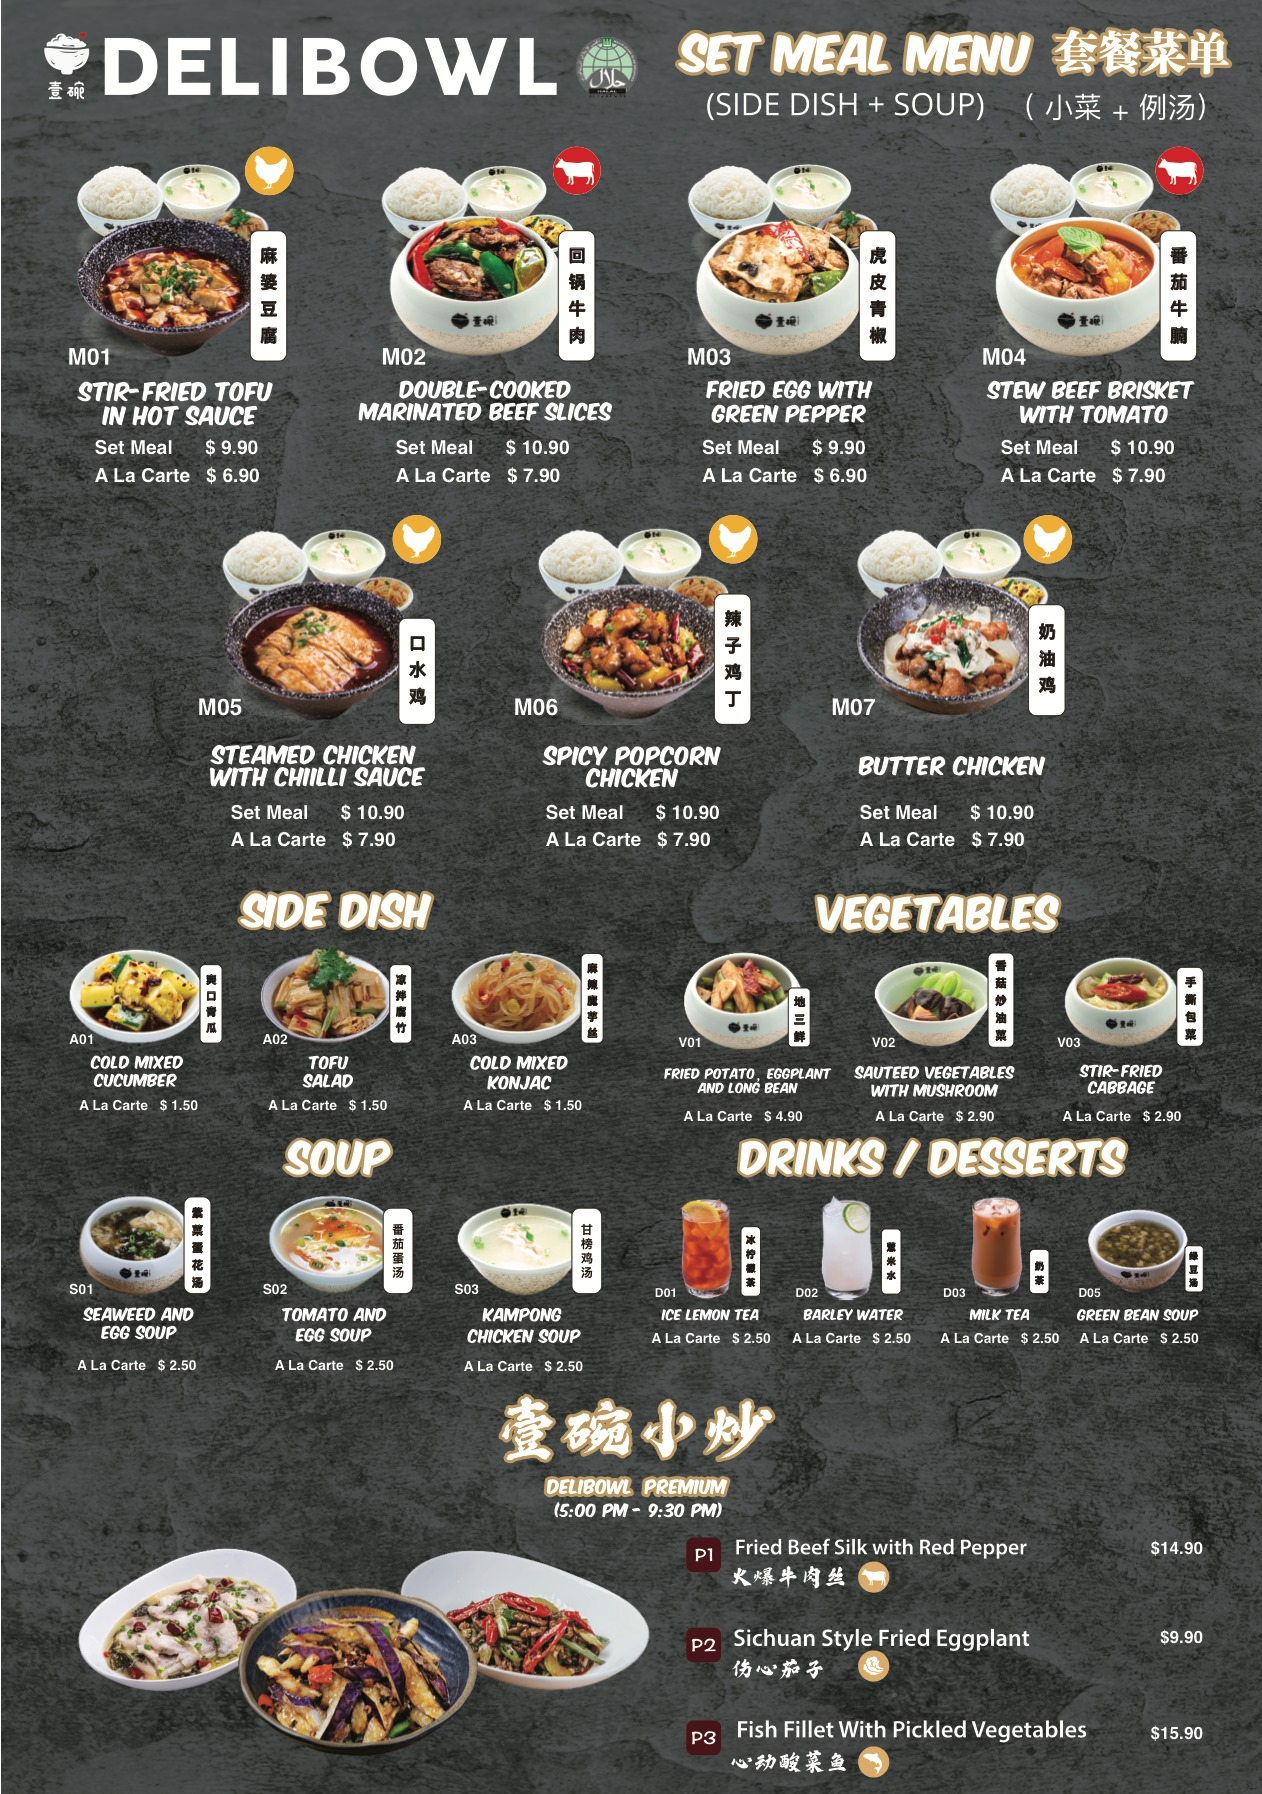 Delibowl Rice Bowl set meal menu